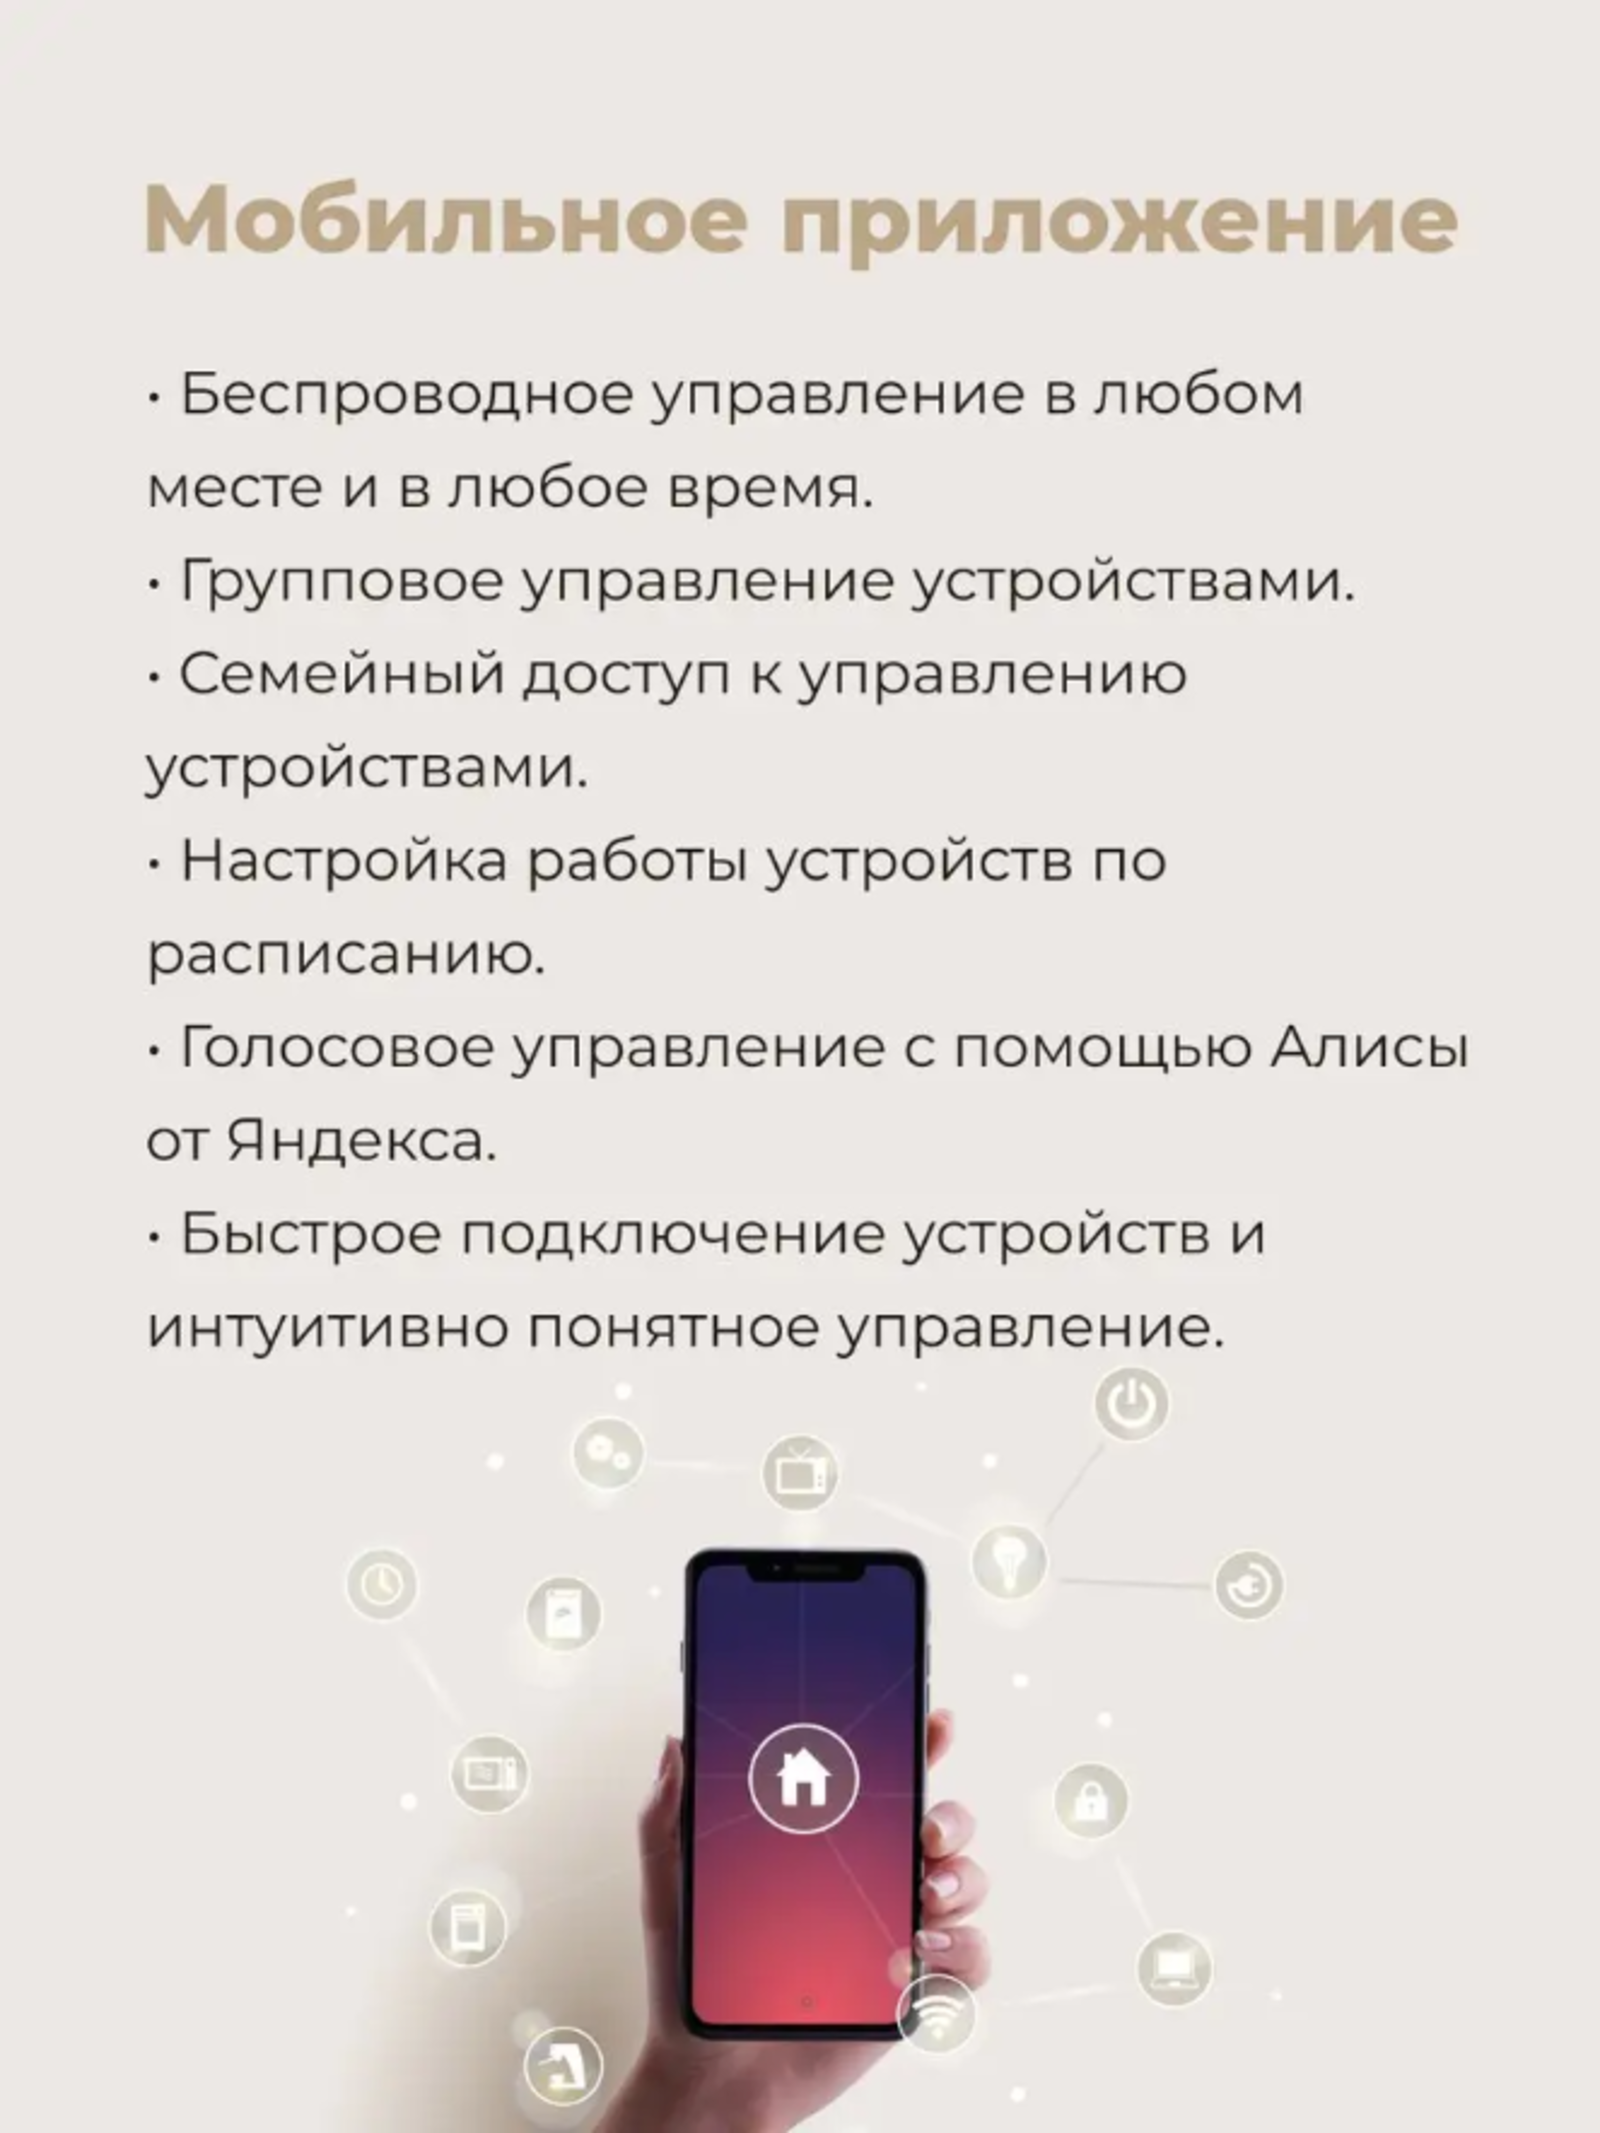 Разработано специальное мобильное приложение для работы с устройством.